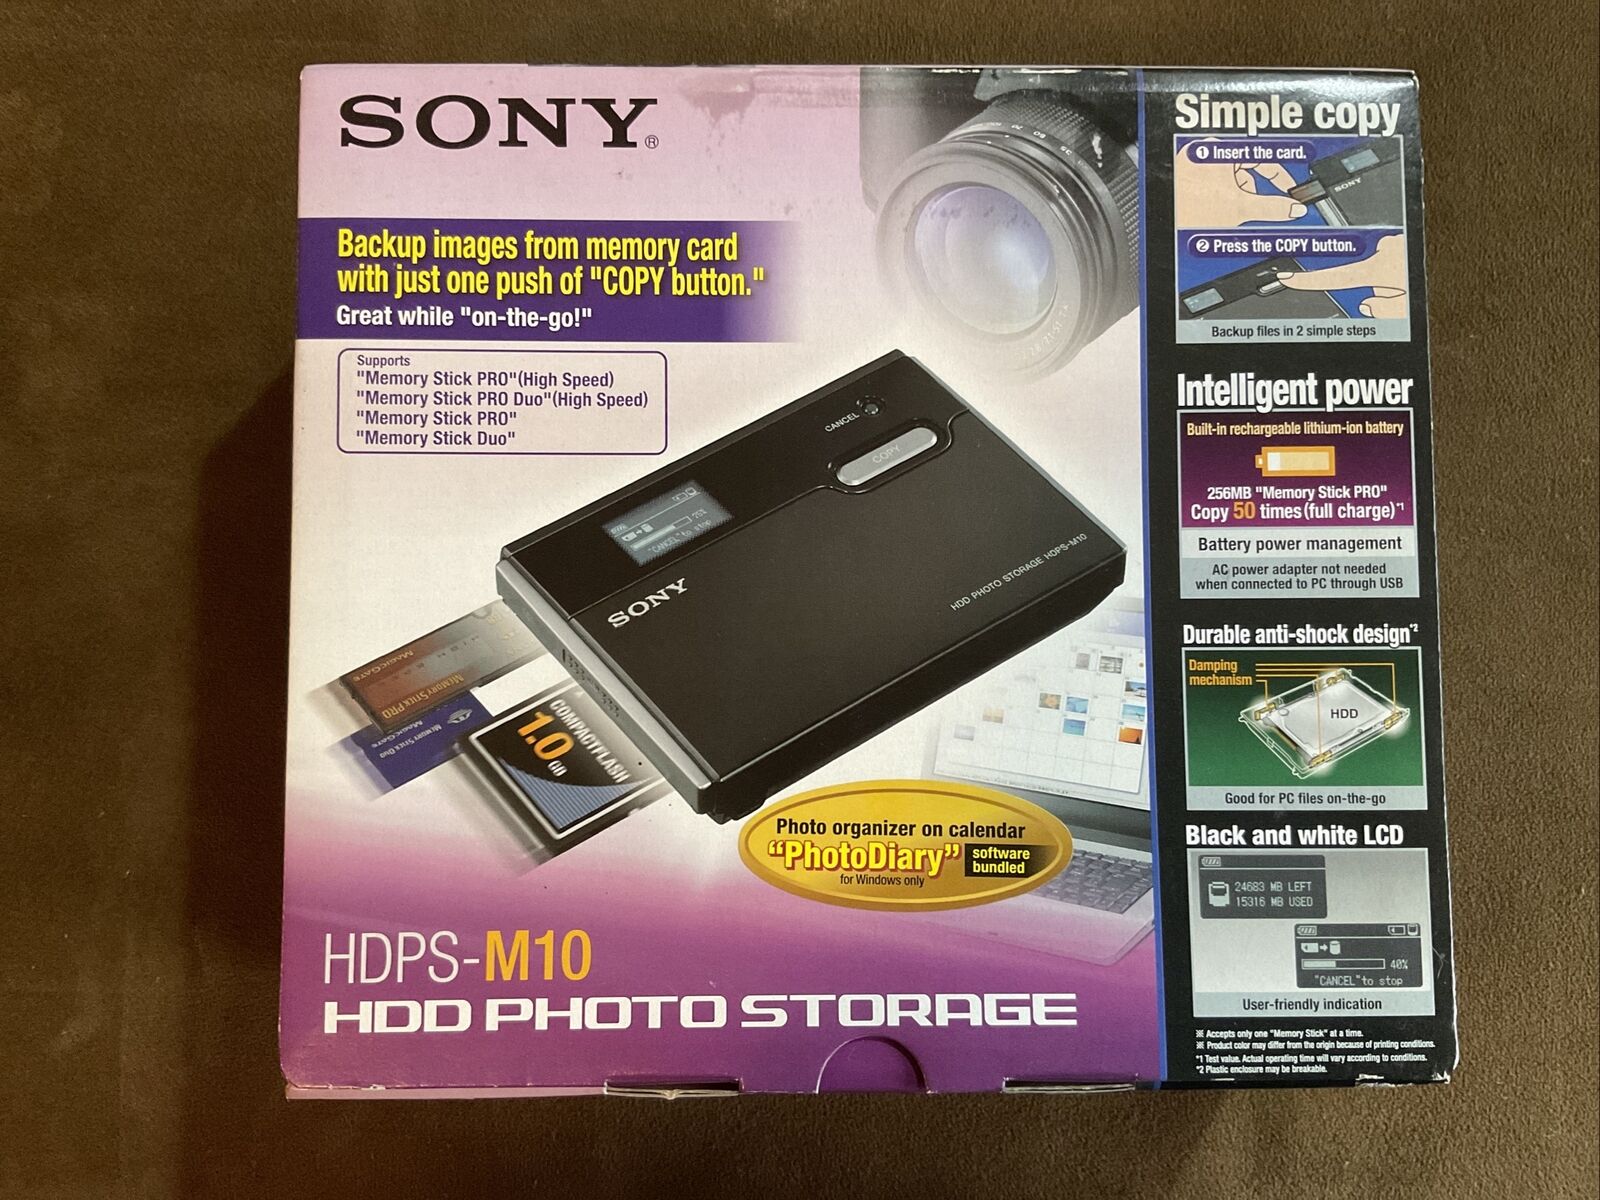 sony hdps-m10 hdd photo storage